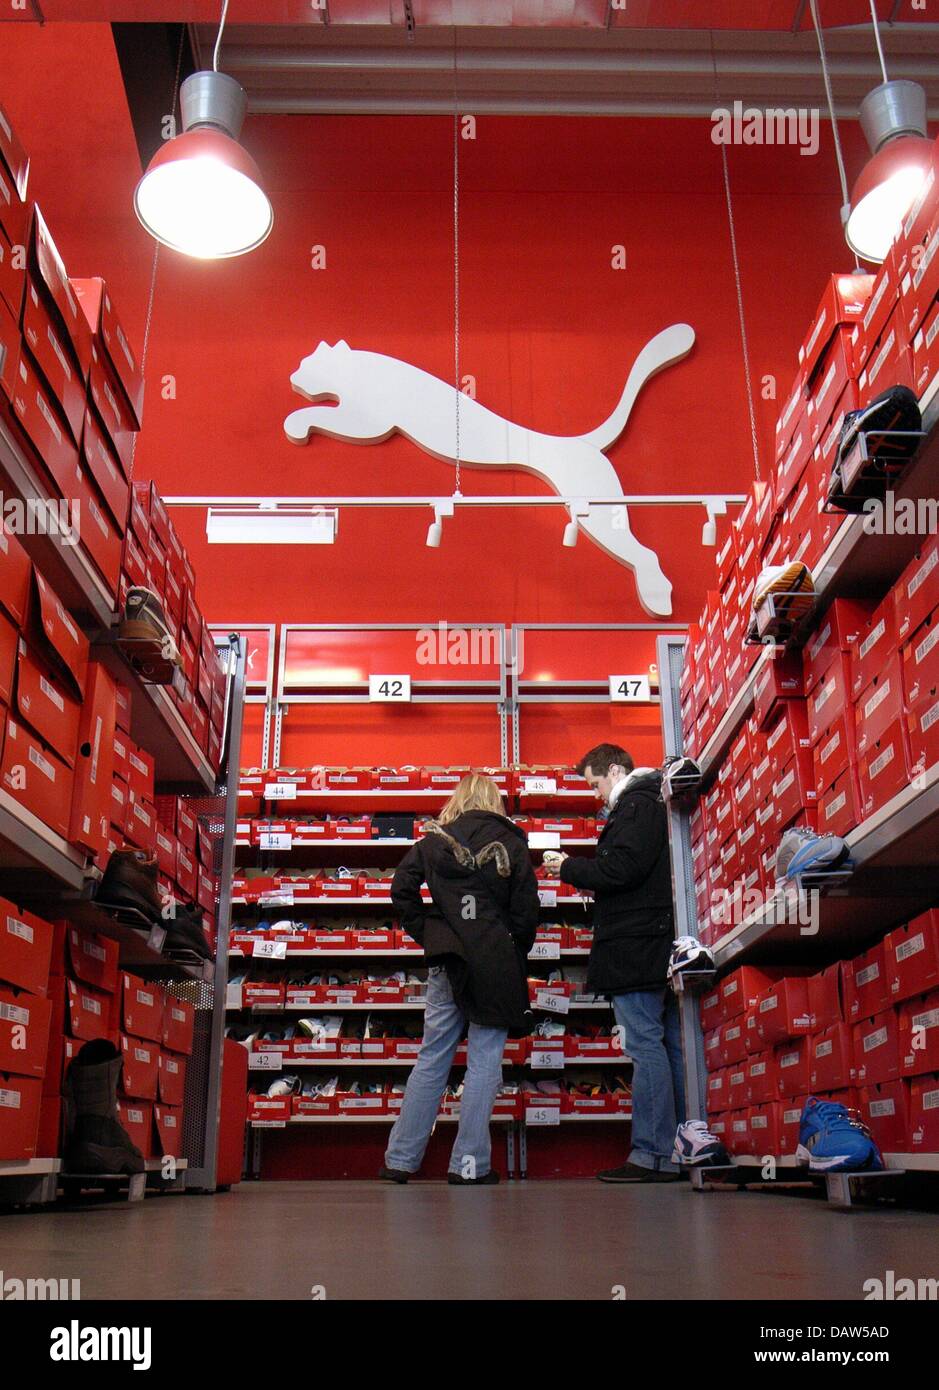 Zwei Kunden schauen für Schuhe ein PUMA Outlet Store in Bremen,  Deutschland, Samstag, 27. Januar 2007. Foto: Kay Nietfeld Stockfotografie -  Alamy